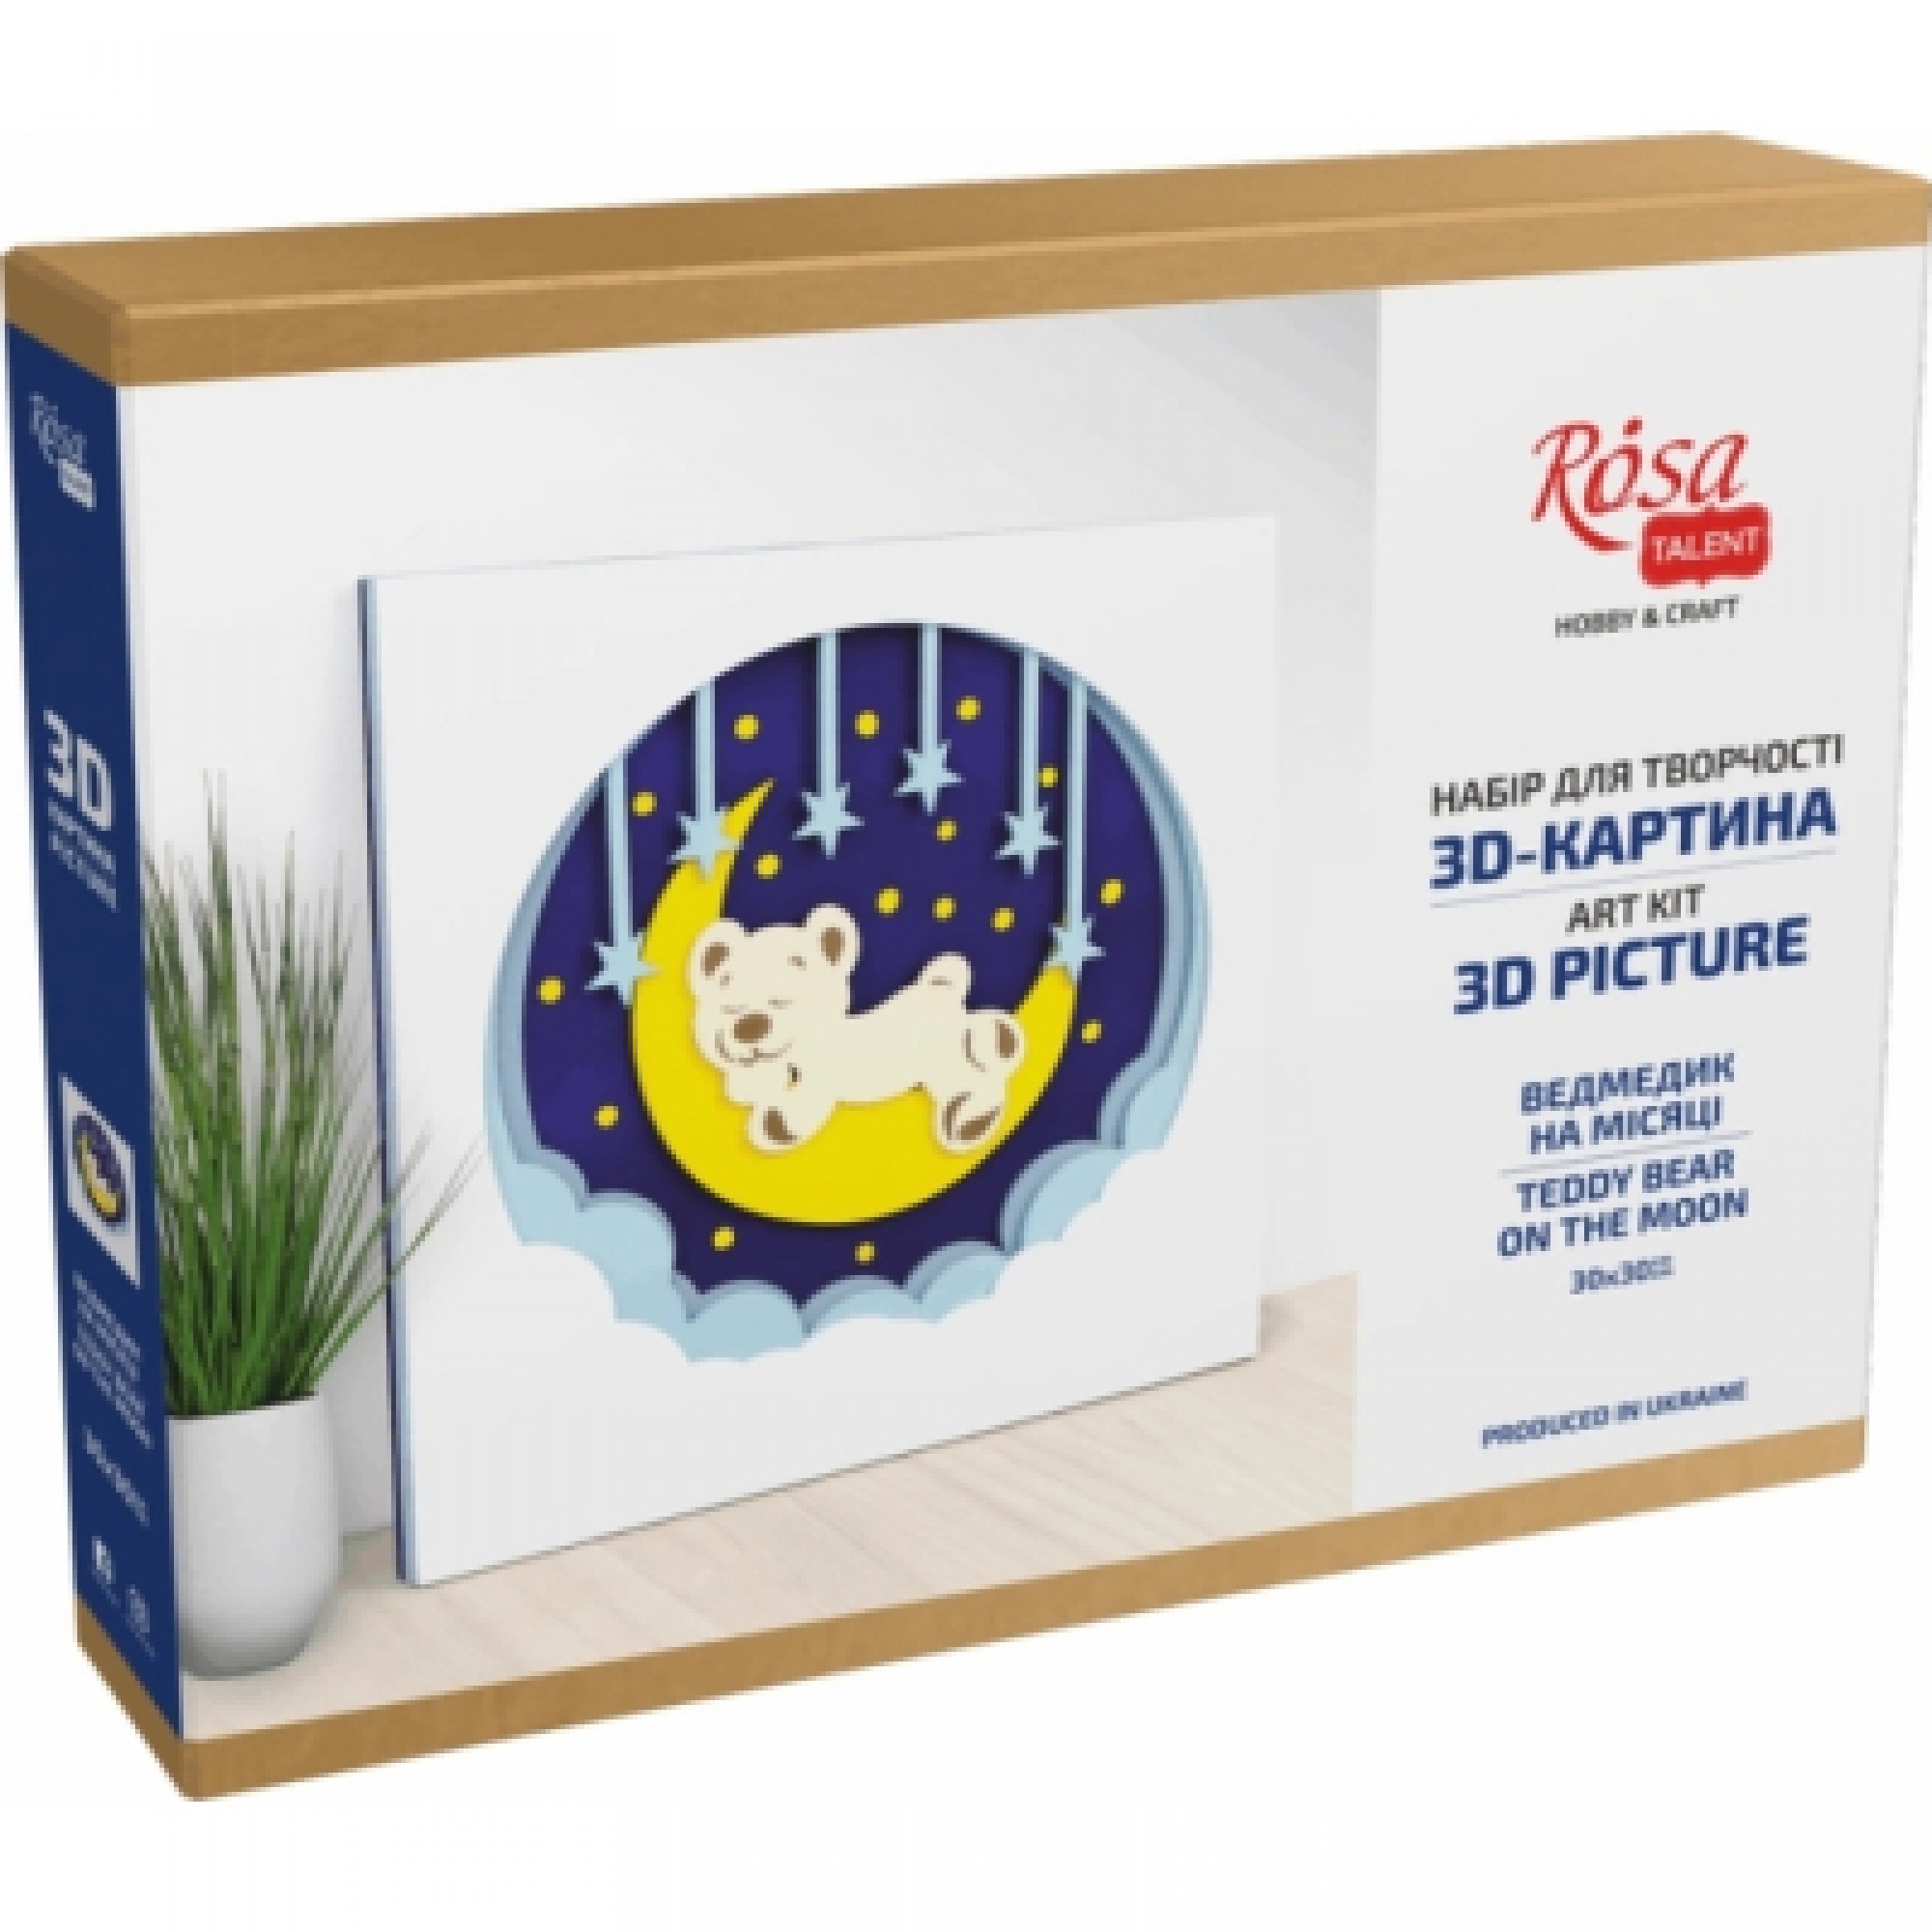 Набір для творчості Rosa Talent 3D Ведмедик на місяці“ 30 х 30 см (4823098528920)